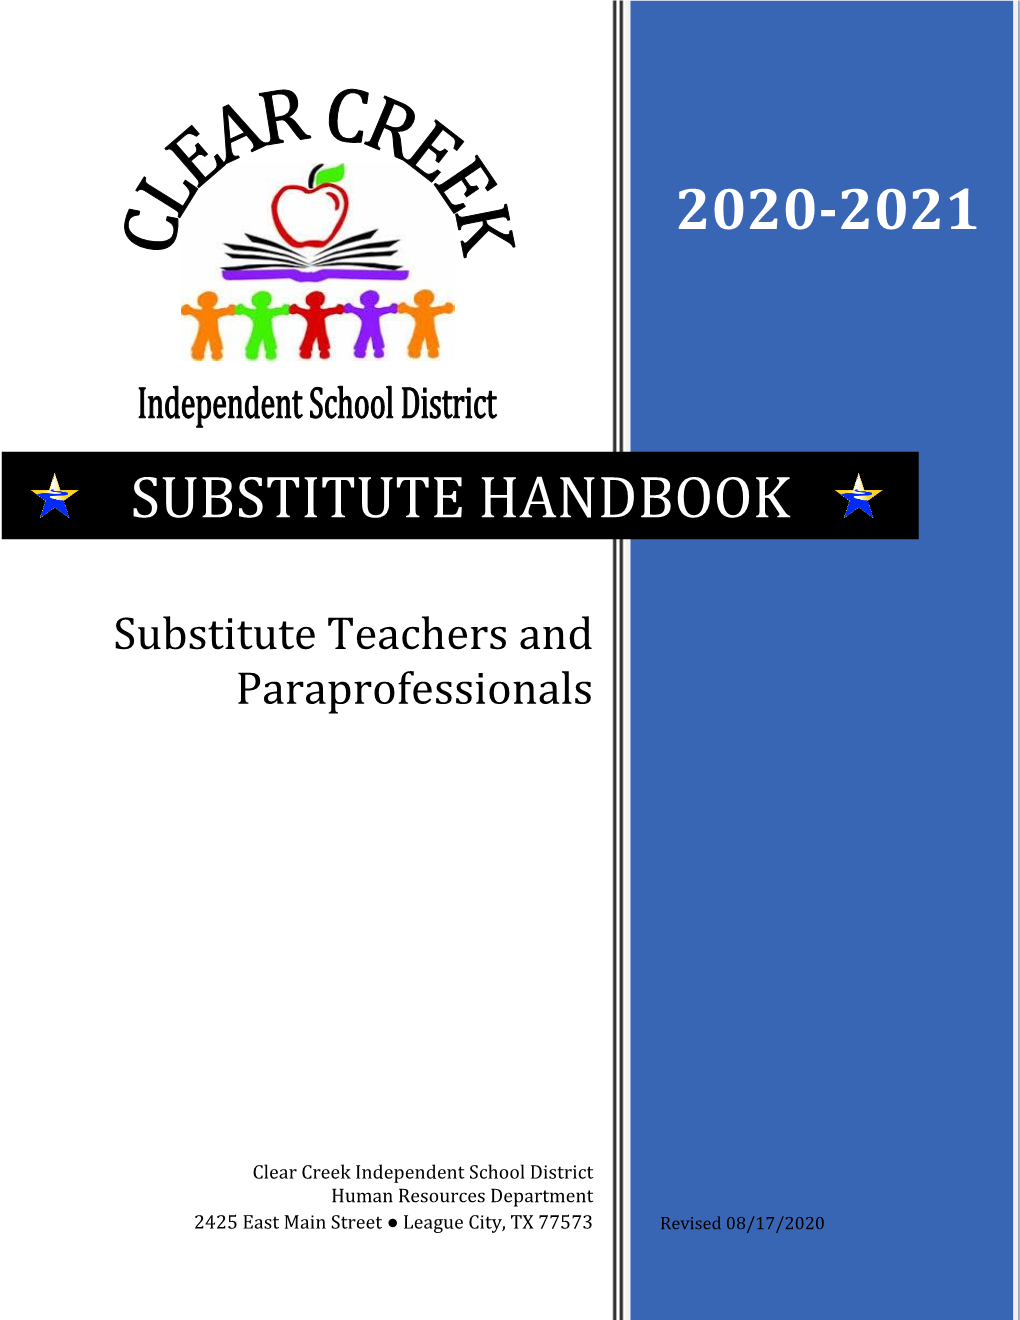 2020-2021 Substitute Handbook